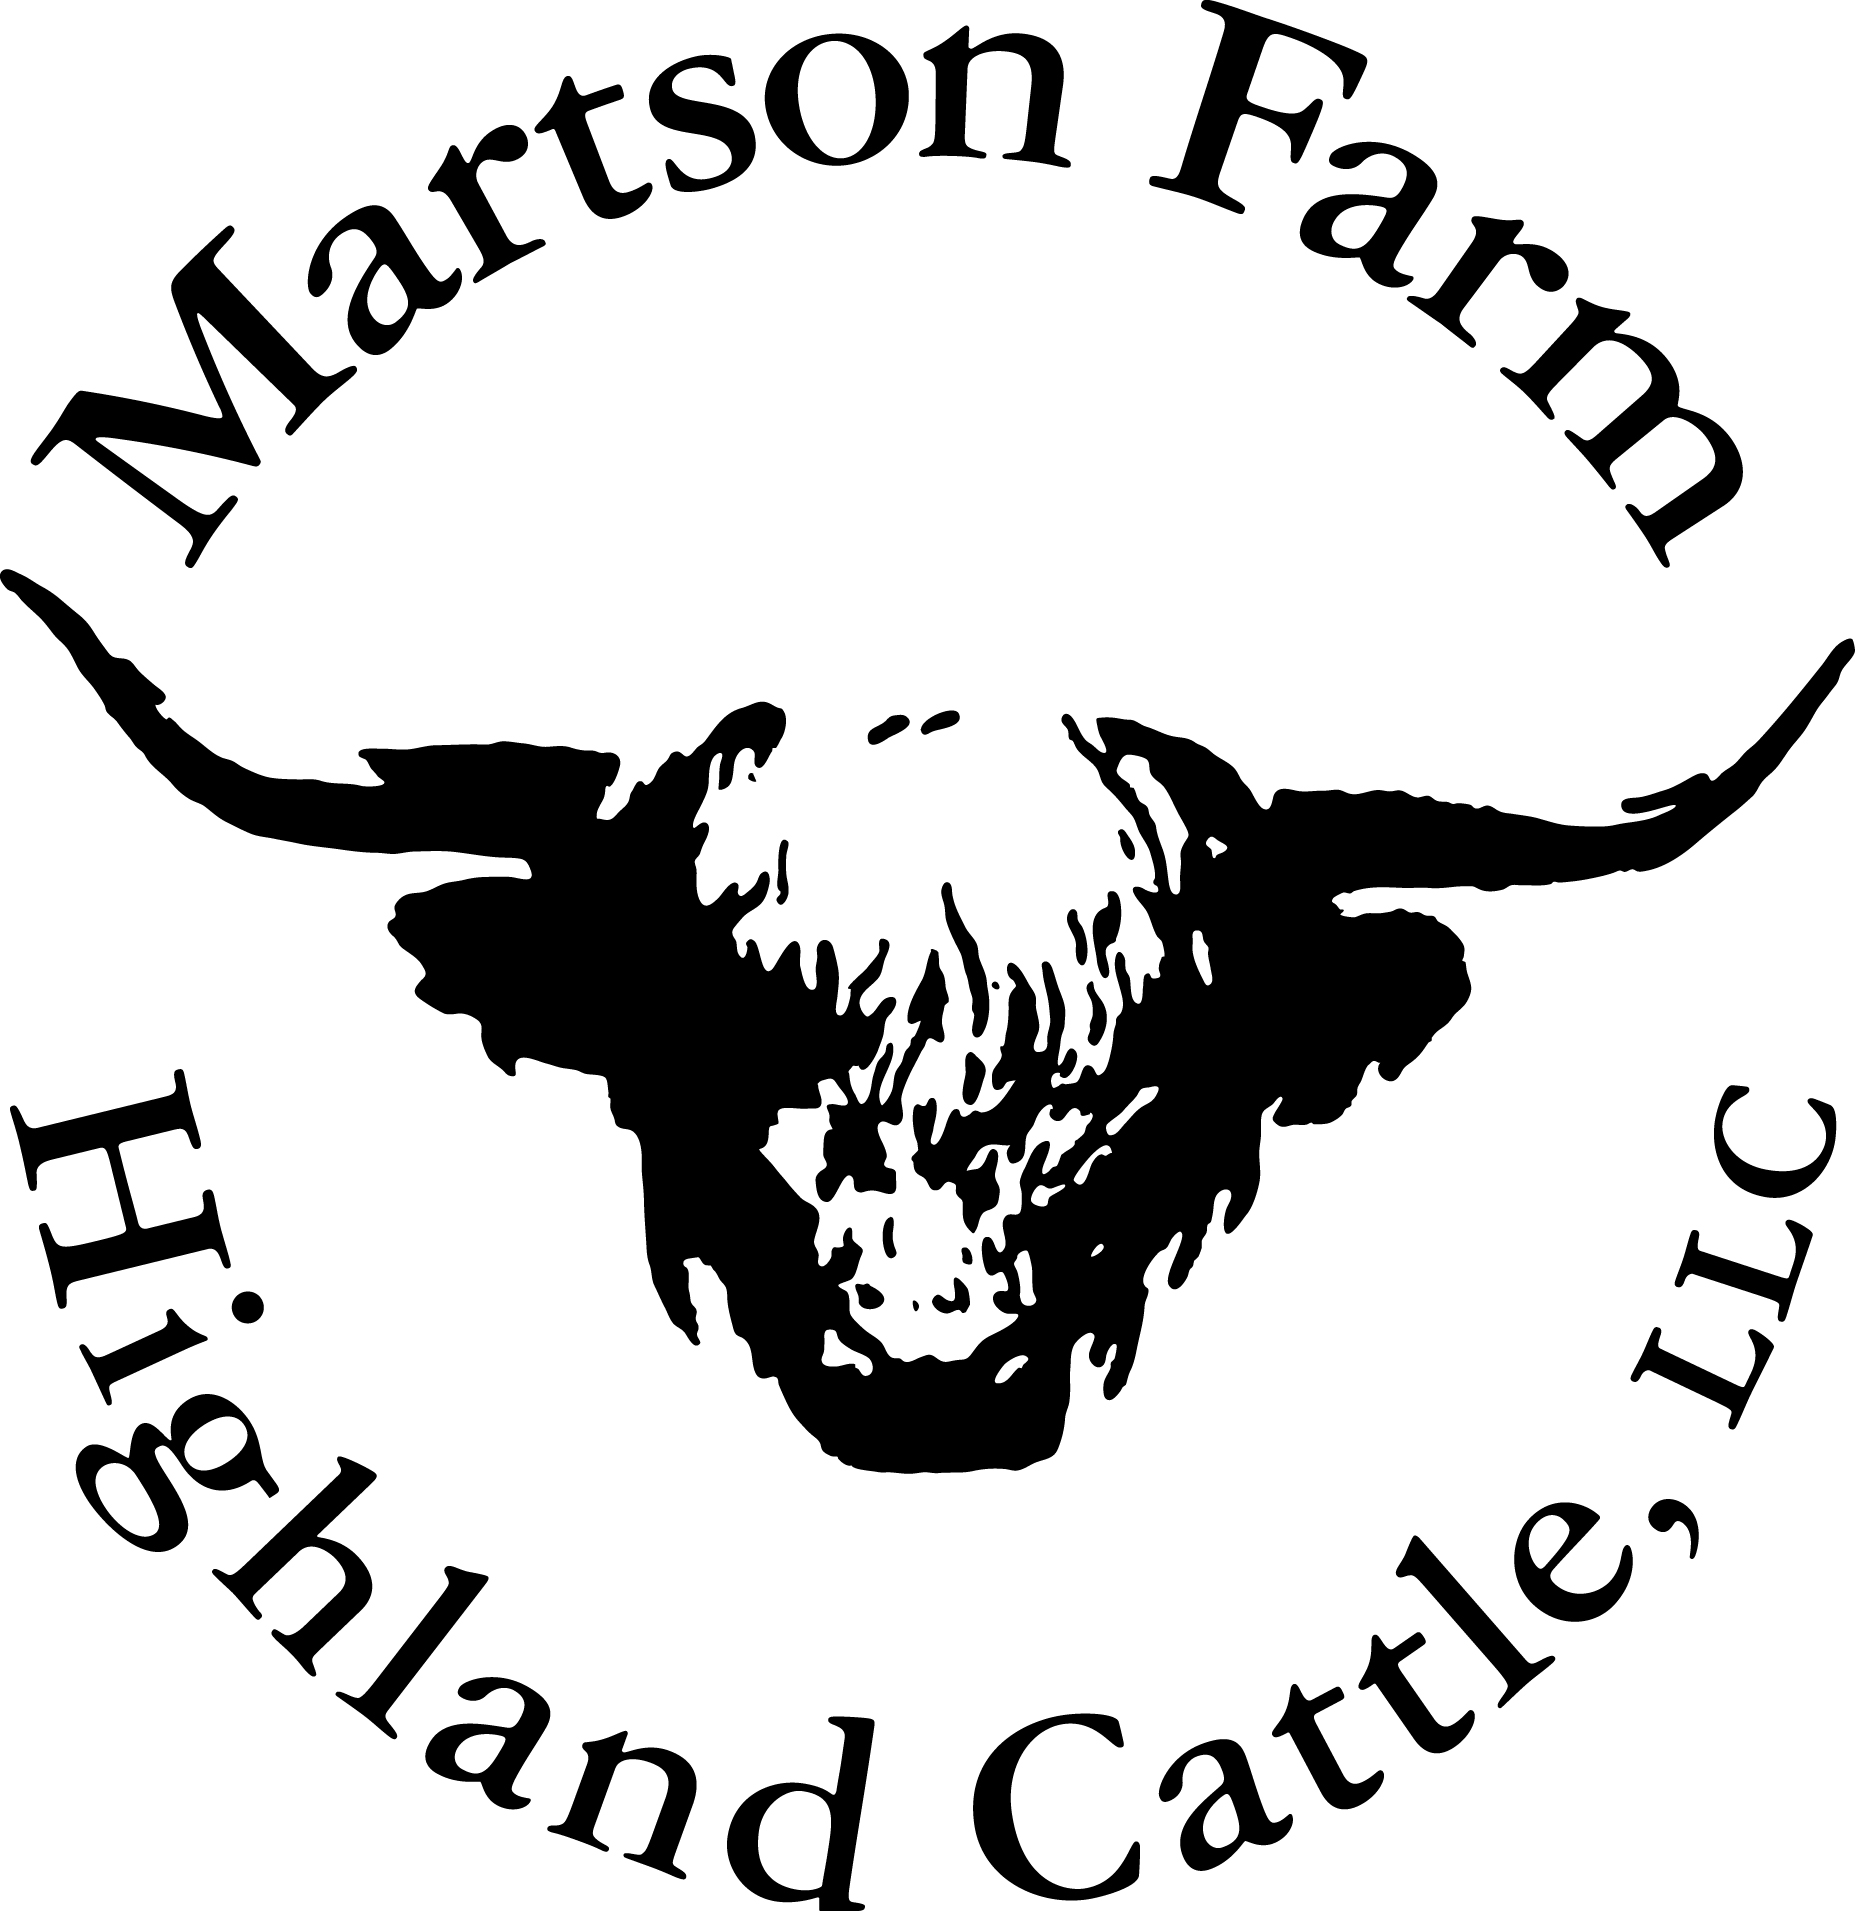 Martson-Farm-Logo-FINAL-LLC-1612216451.jpg